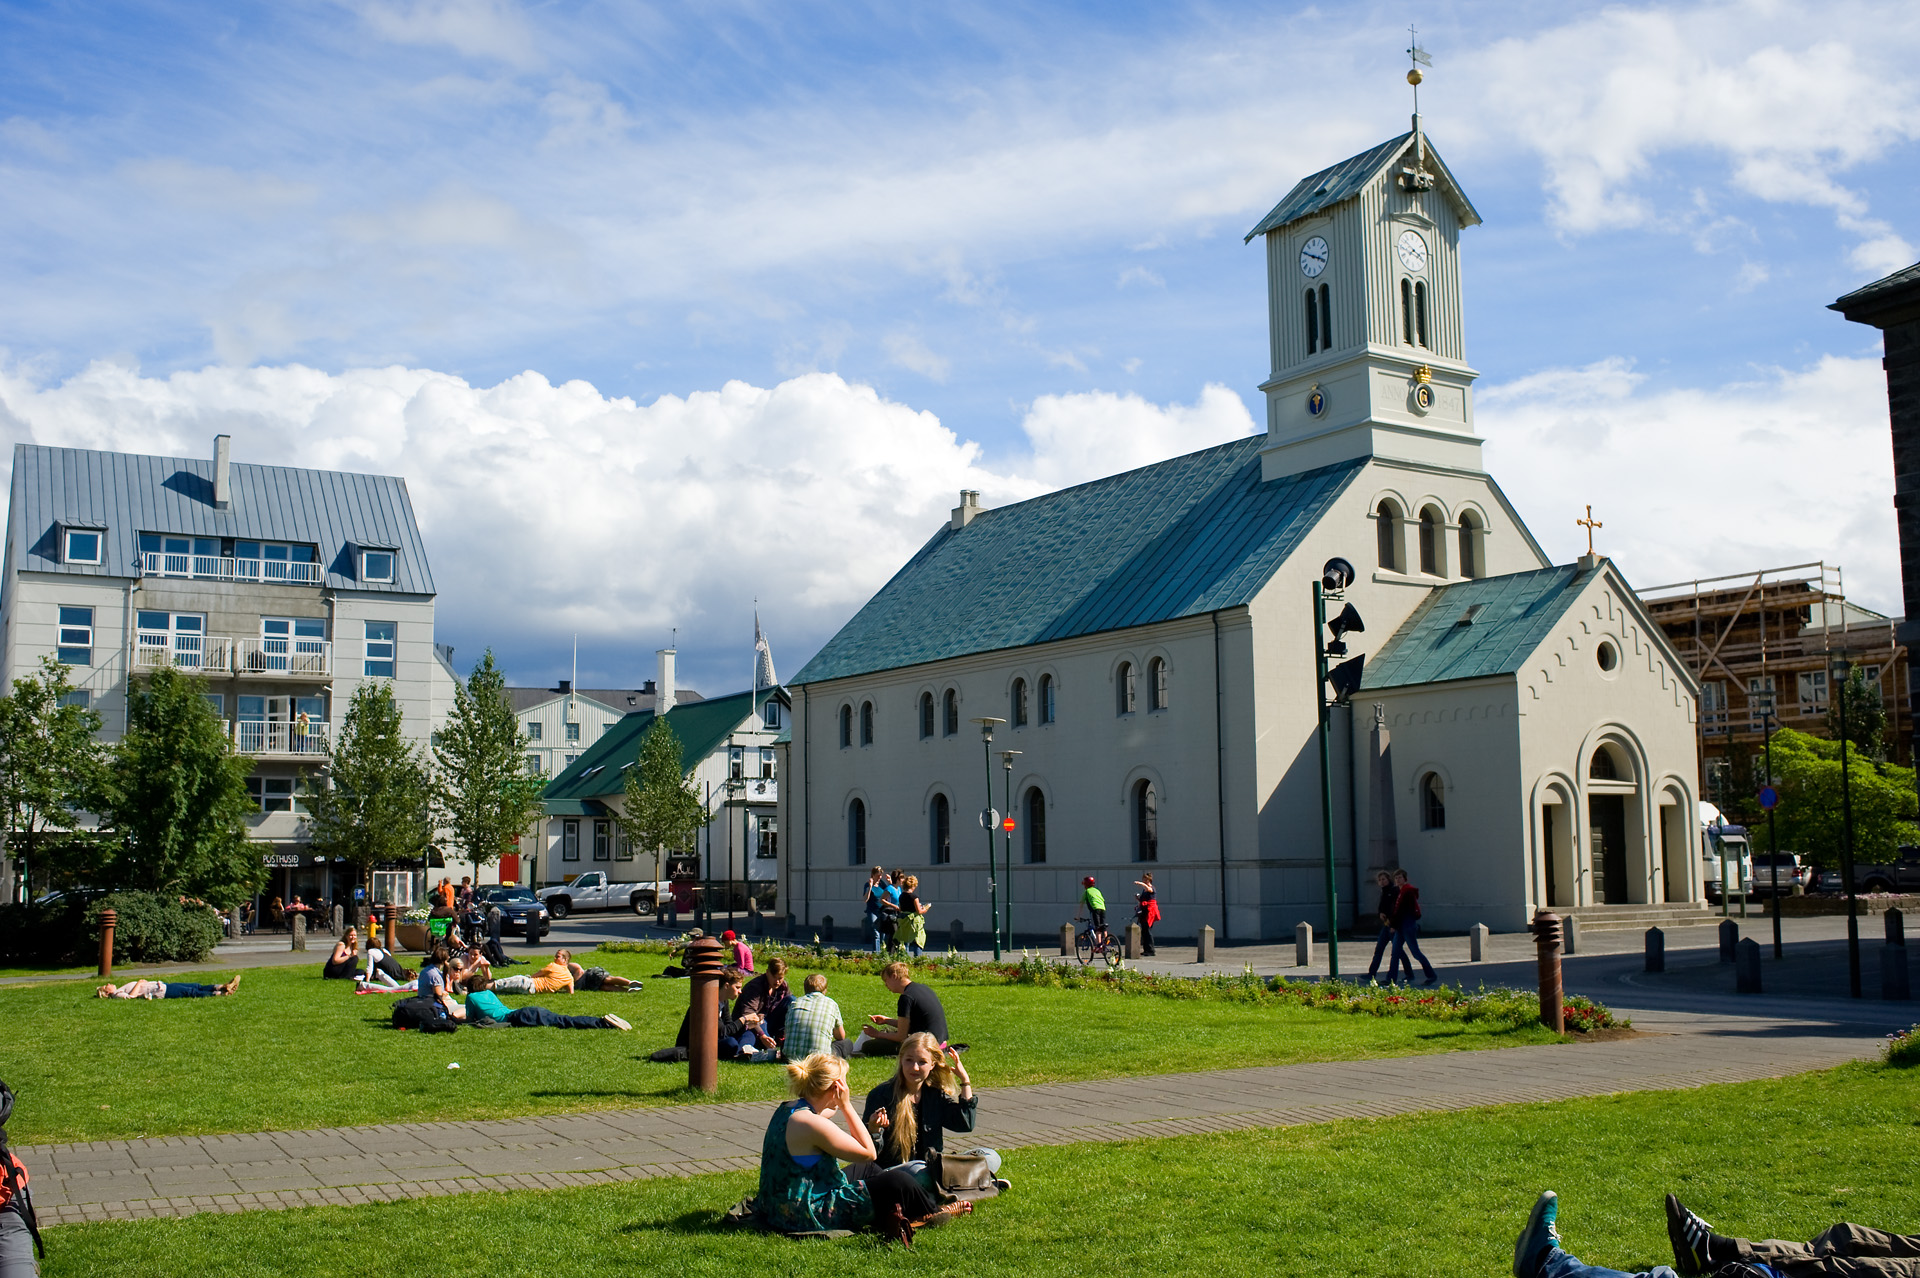 Reykjavík 